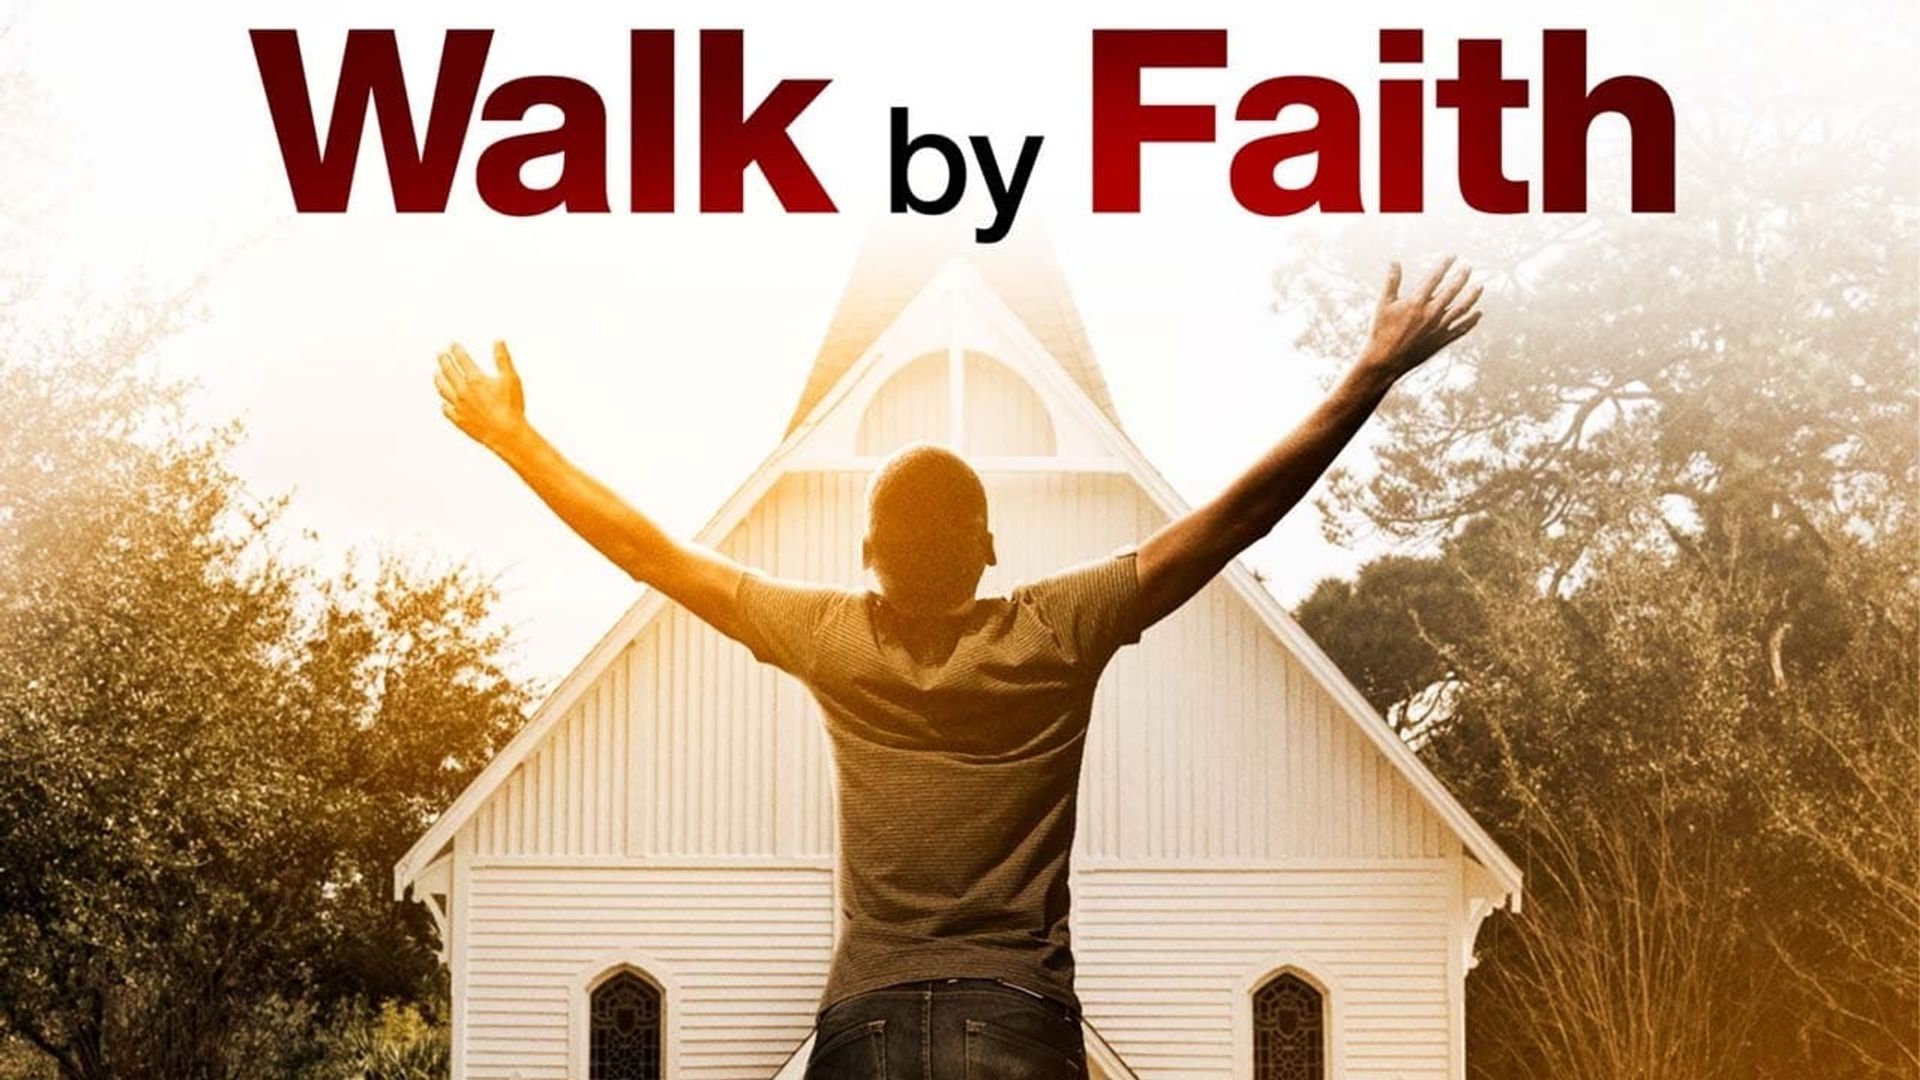 Walk by Faith background